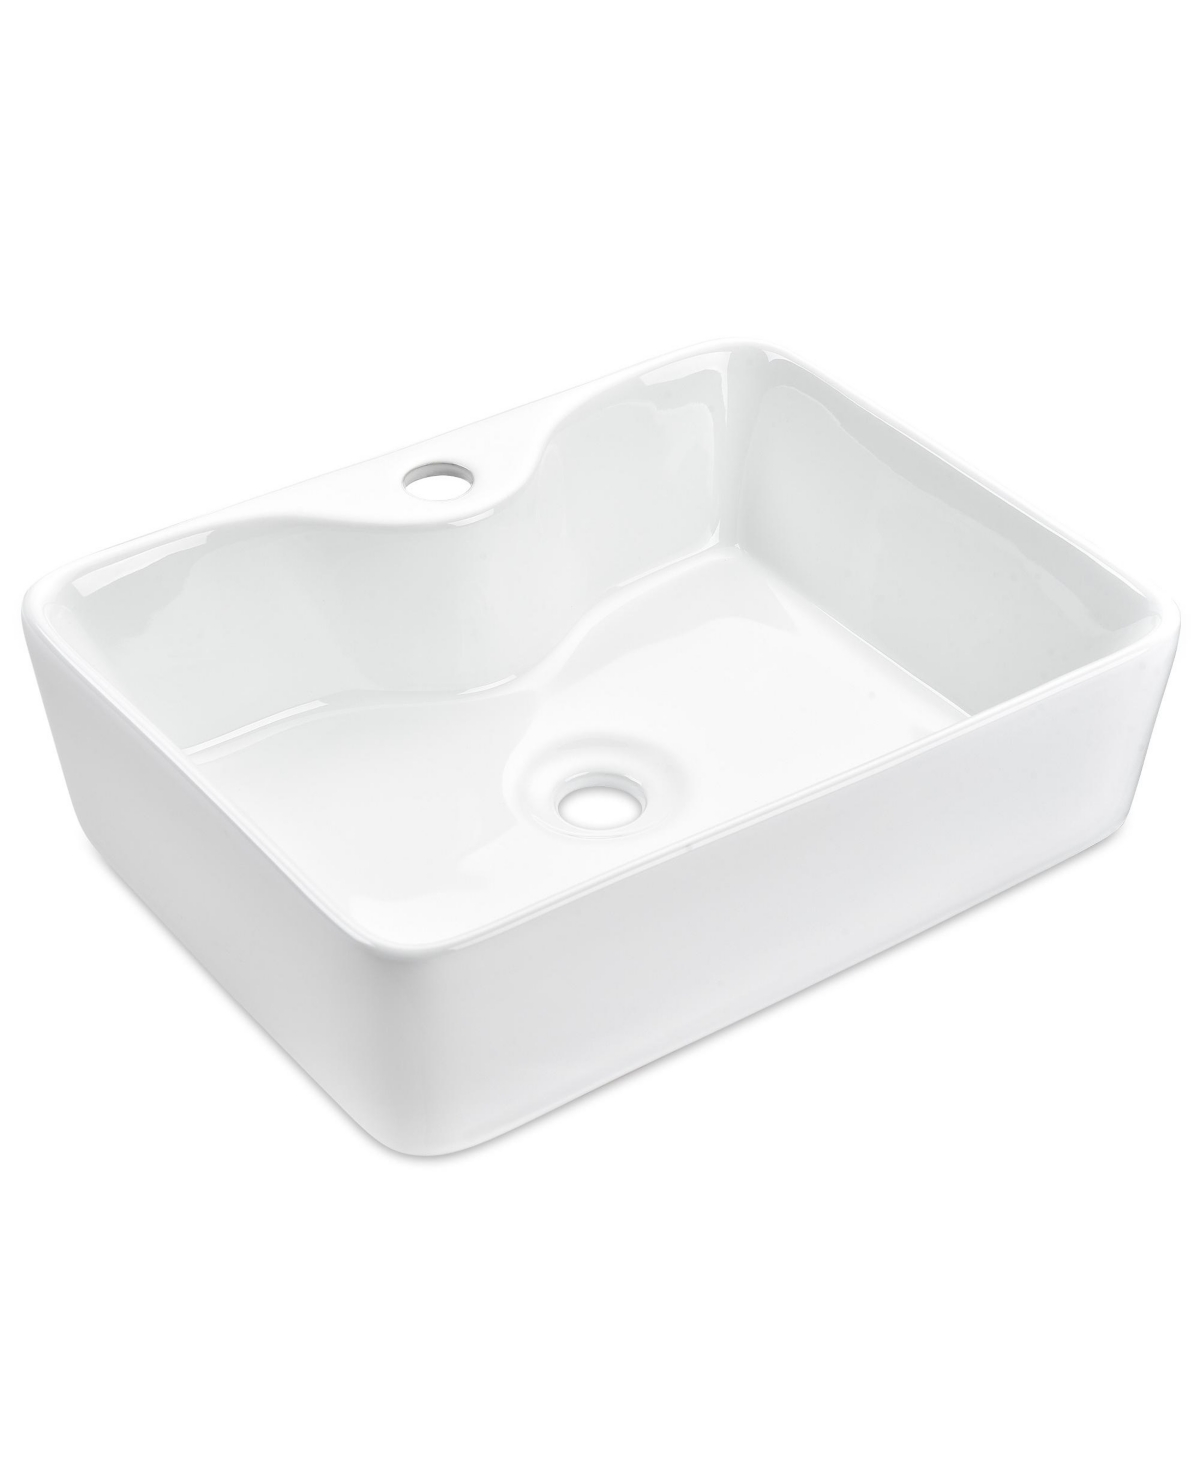 Rectangle Bathroom Vessel Sink Above Counter Porcelain Ceramic Basin - Natural